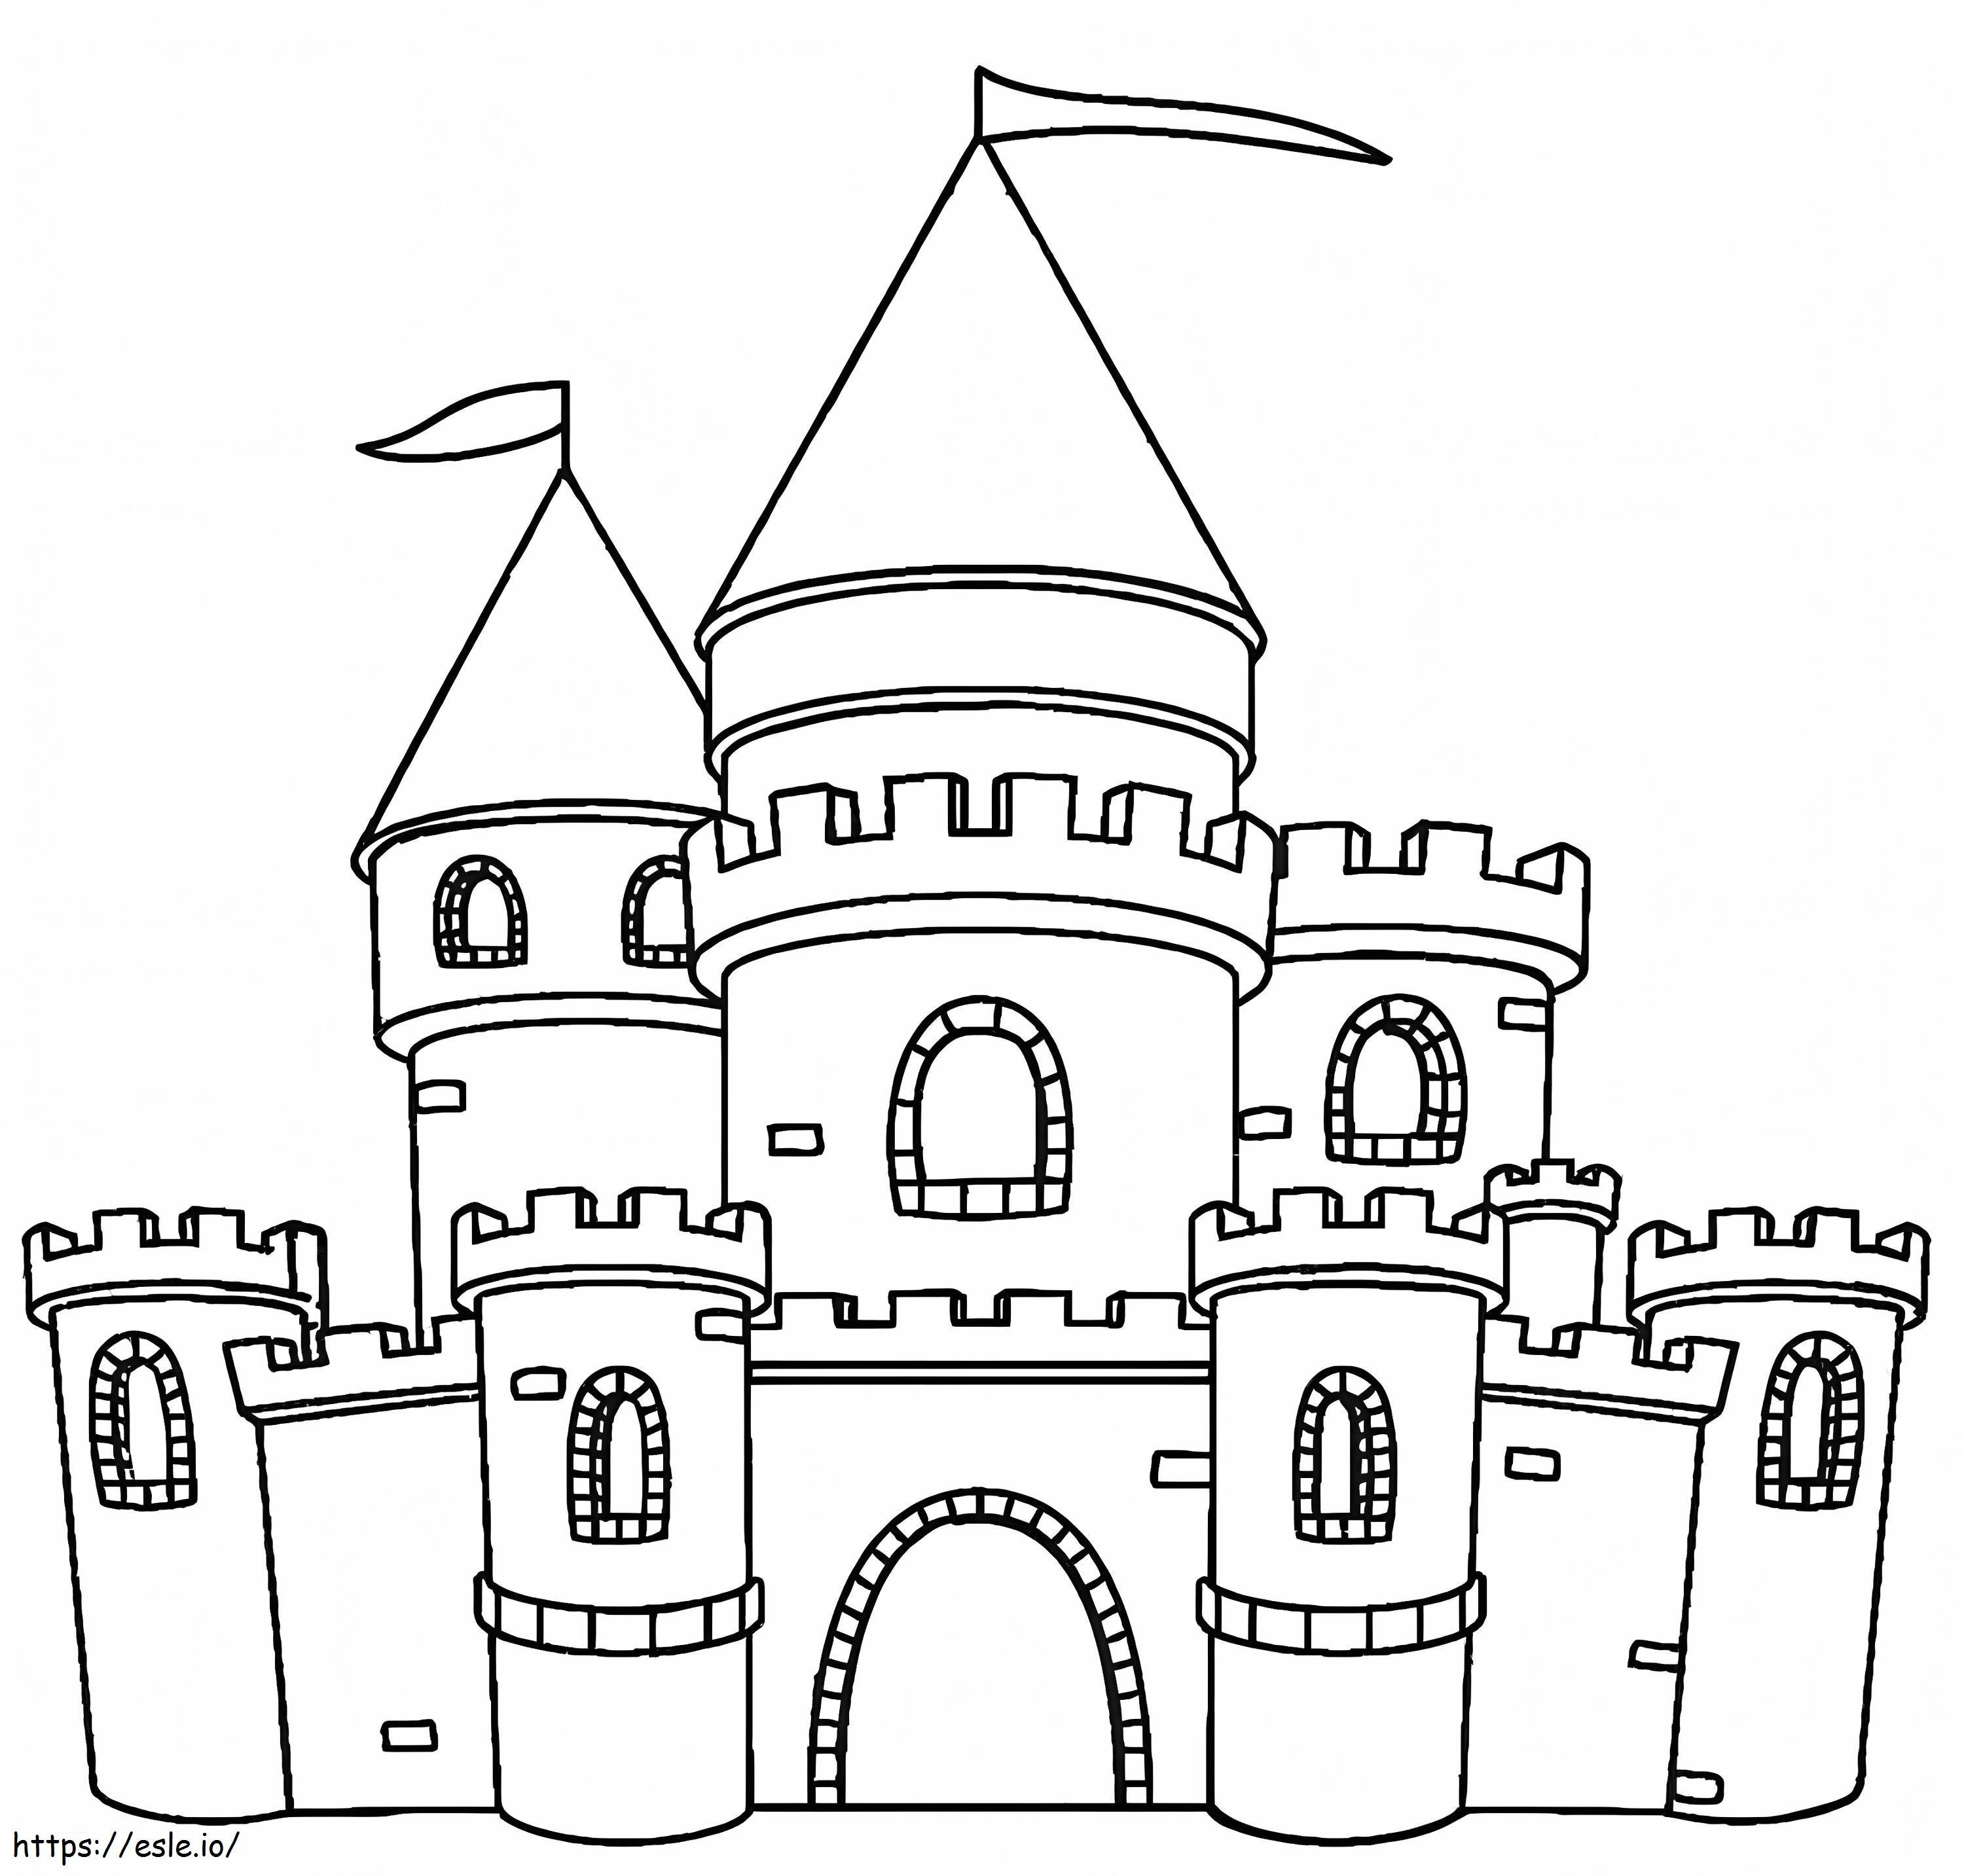 Einfaches Schloss ausmalbilder